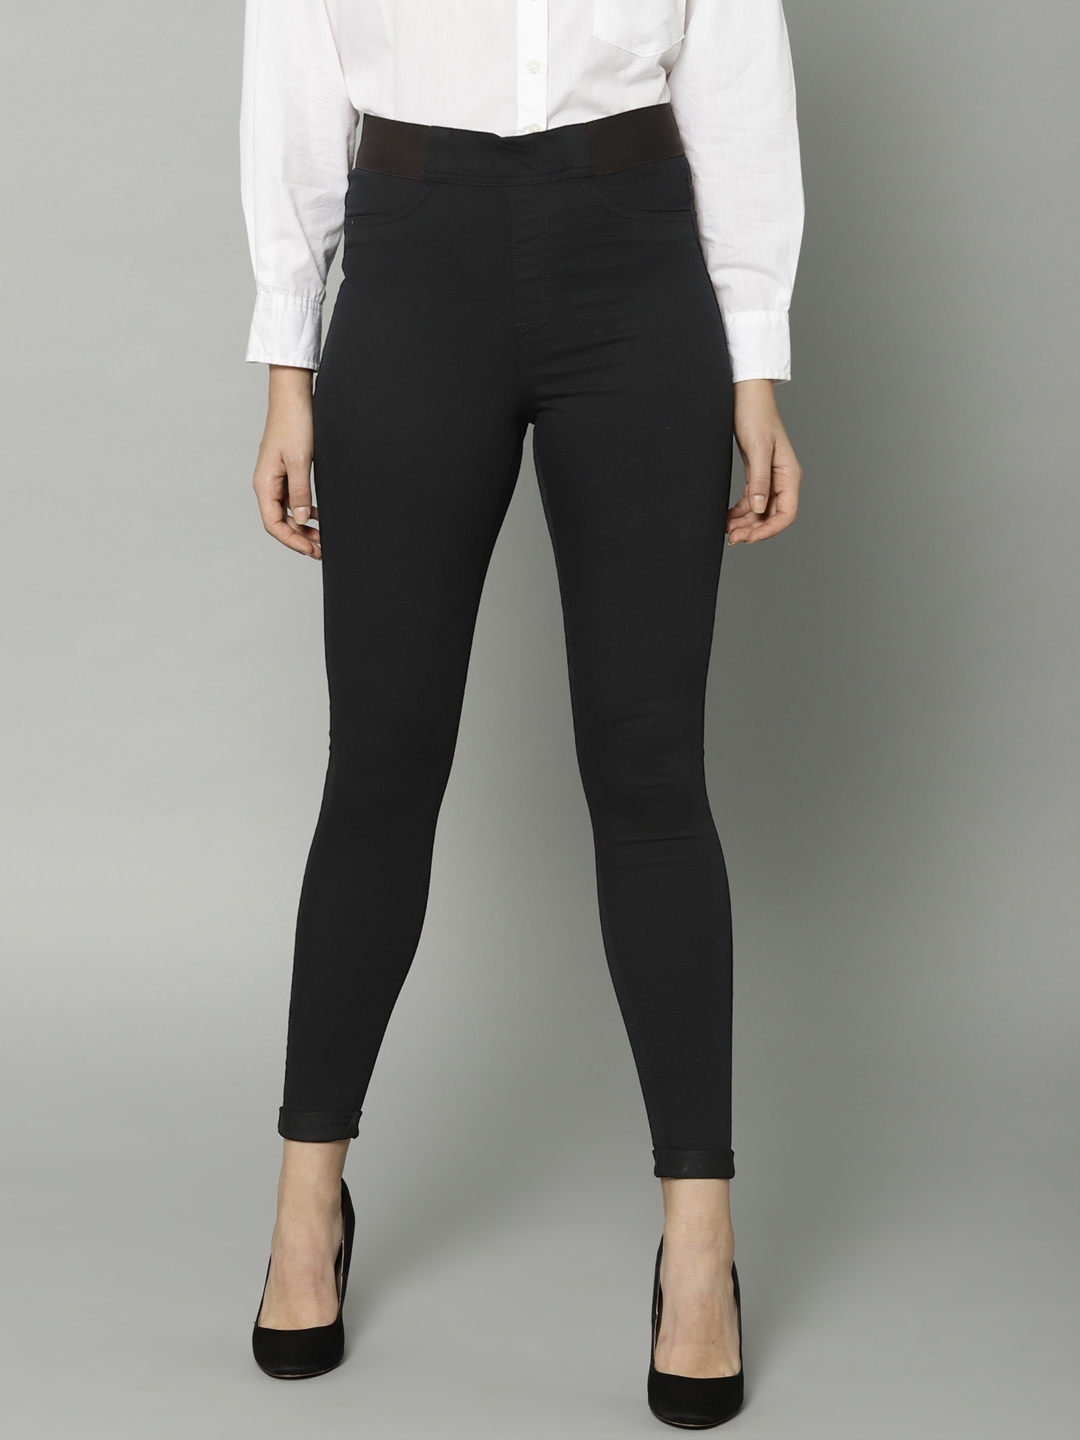 Buy Marks & Spencer Women Black Solid Super Skinny Fit Jeggings ...